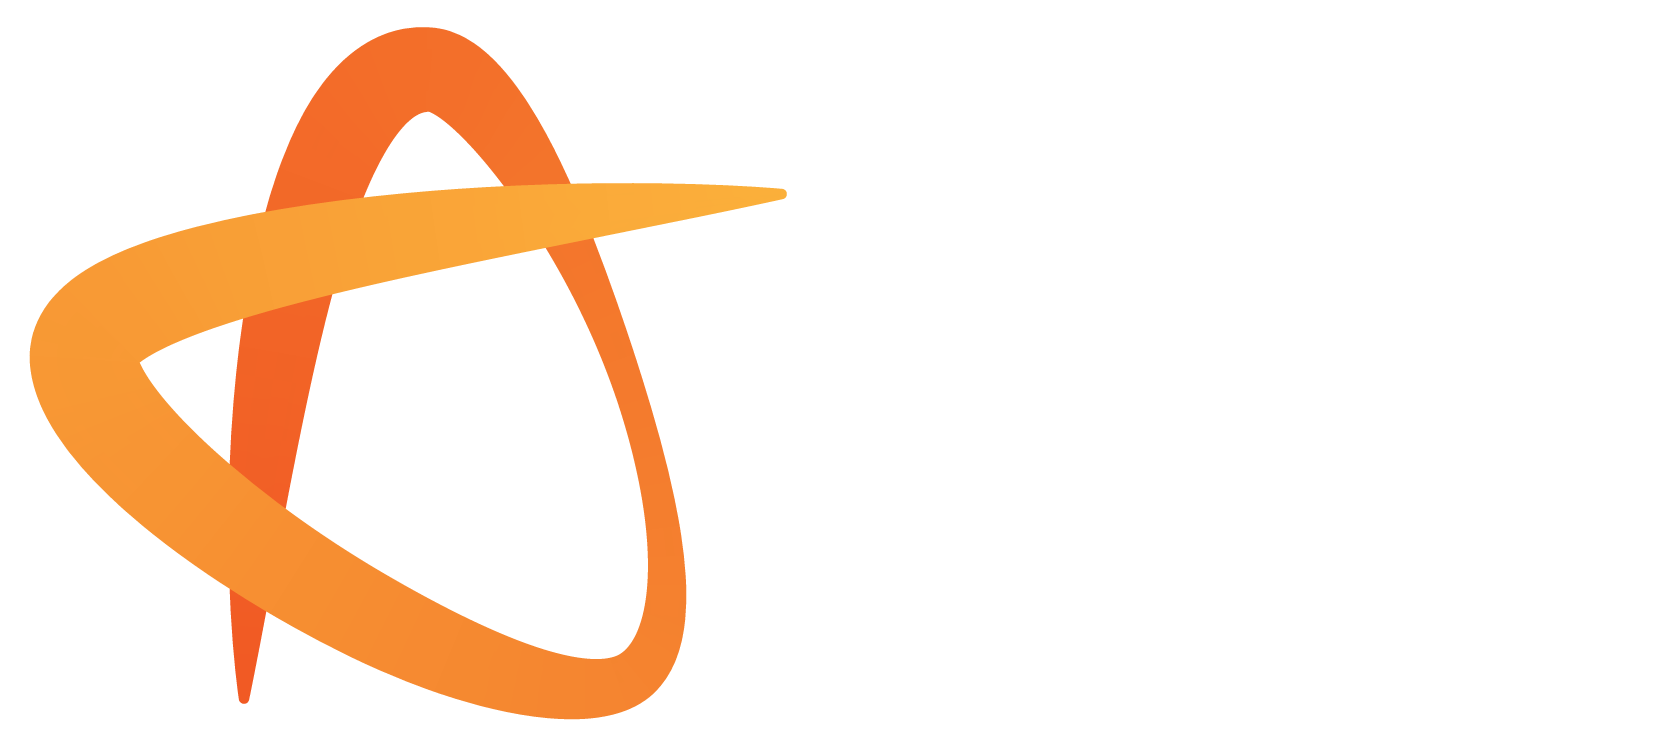 Arts Coaching